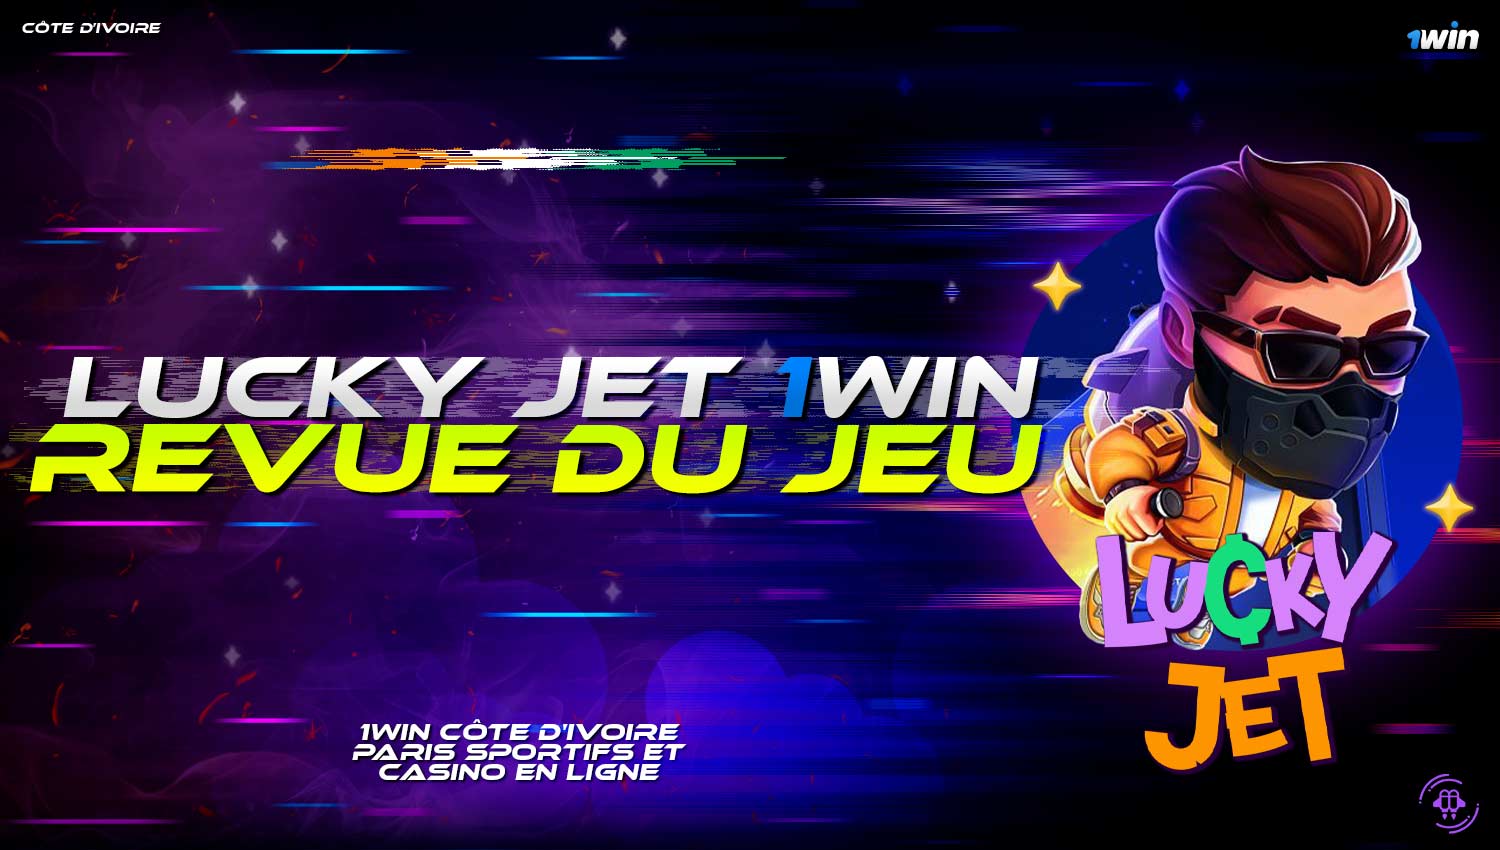 Examen détaillé du jeu "Lucky Jet" sur la plateforme 1win.